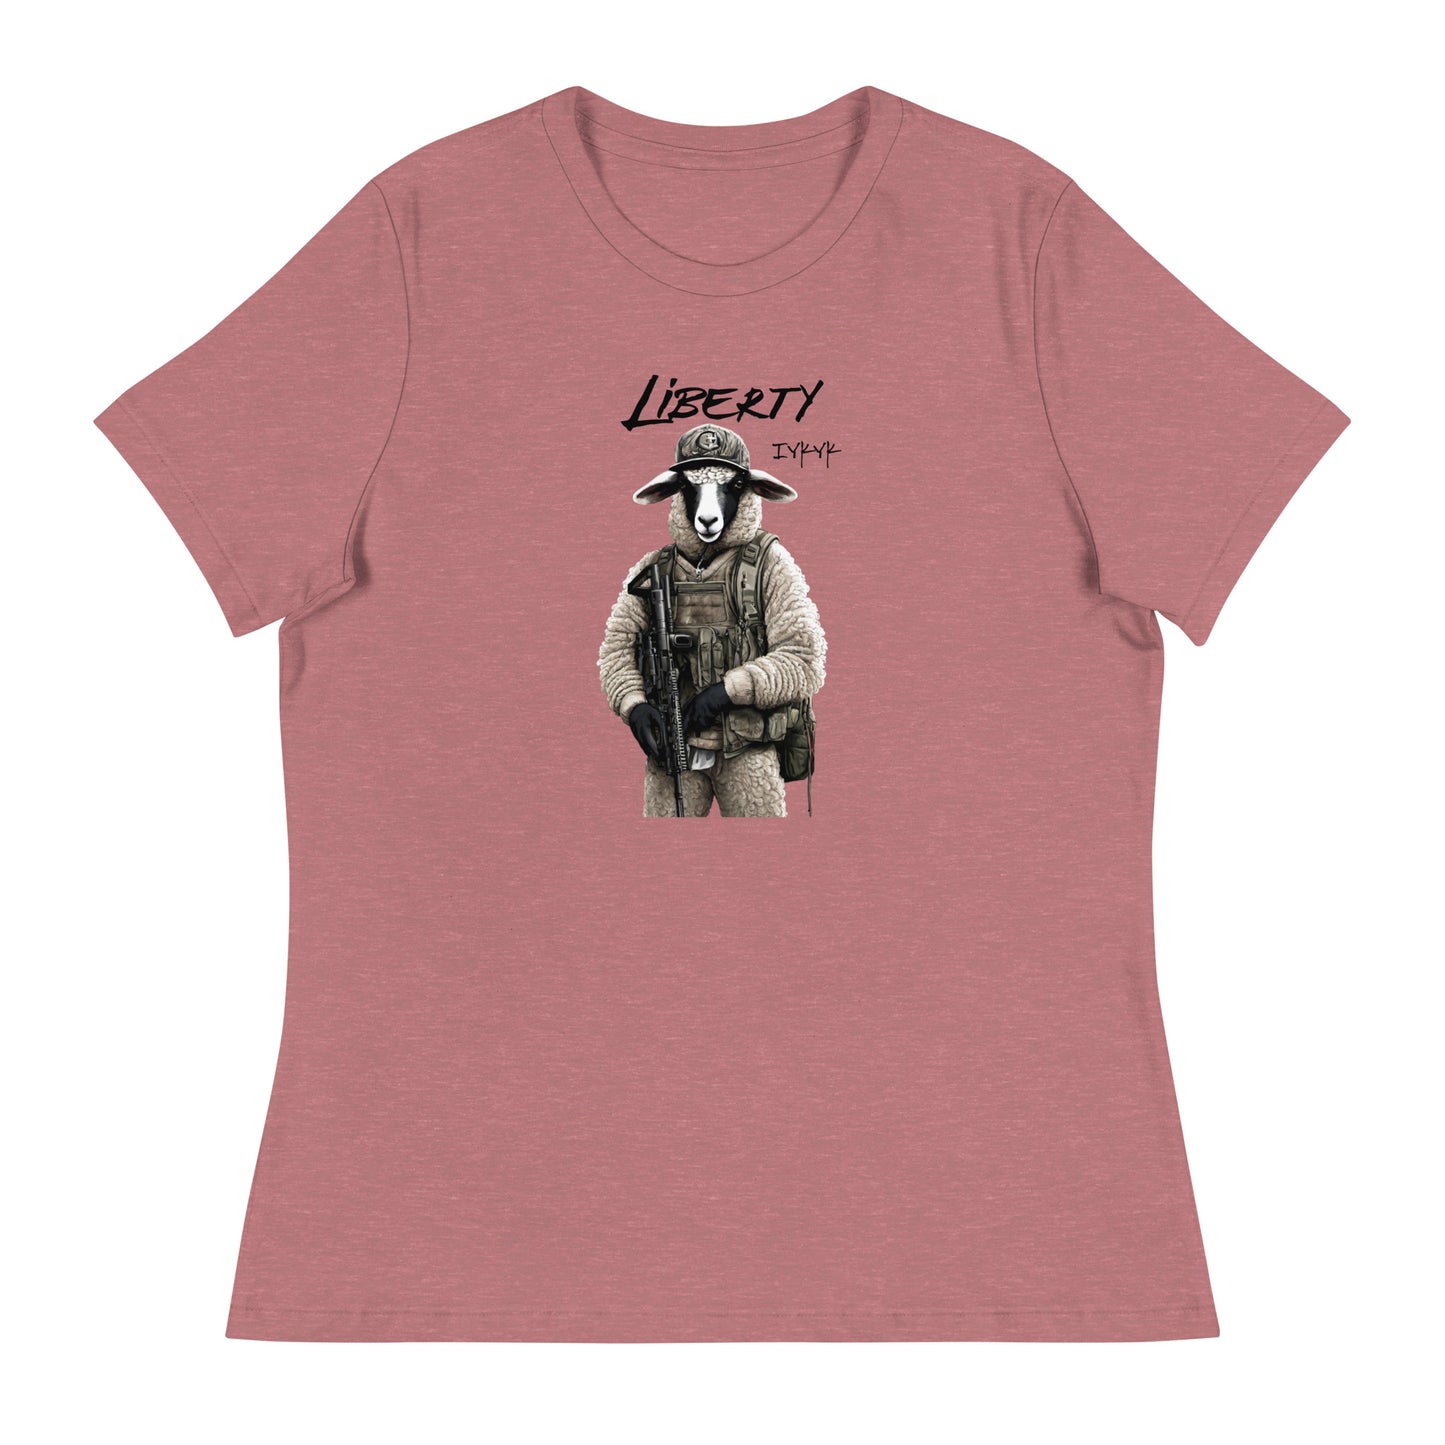 Liberty Lamb 2nd Amendment Women's Graphic T-Shirt Heather Mauve